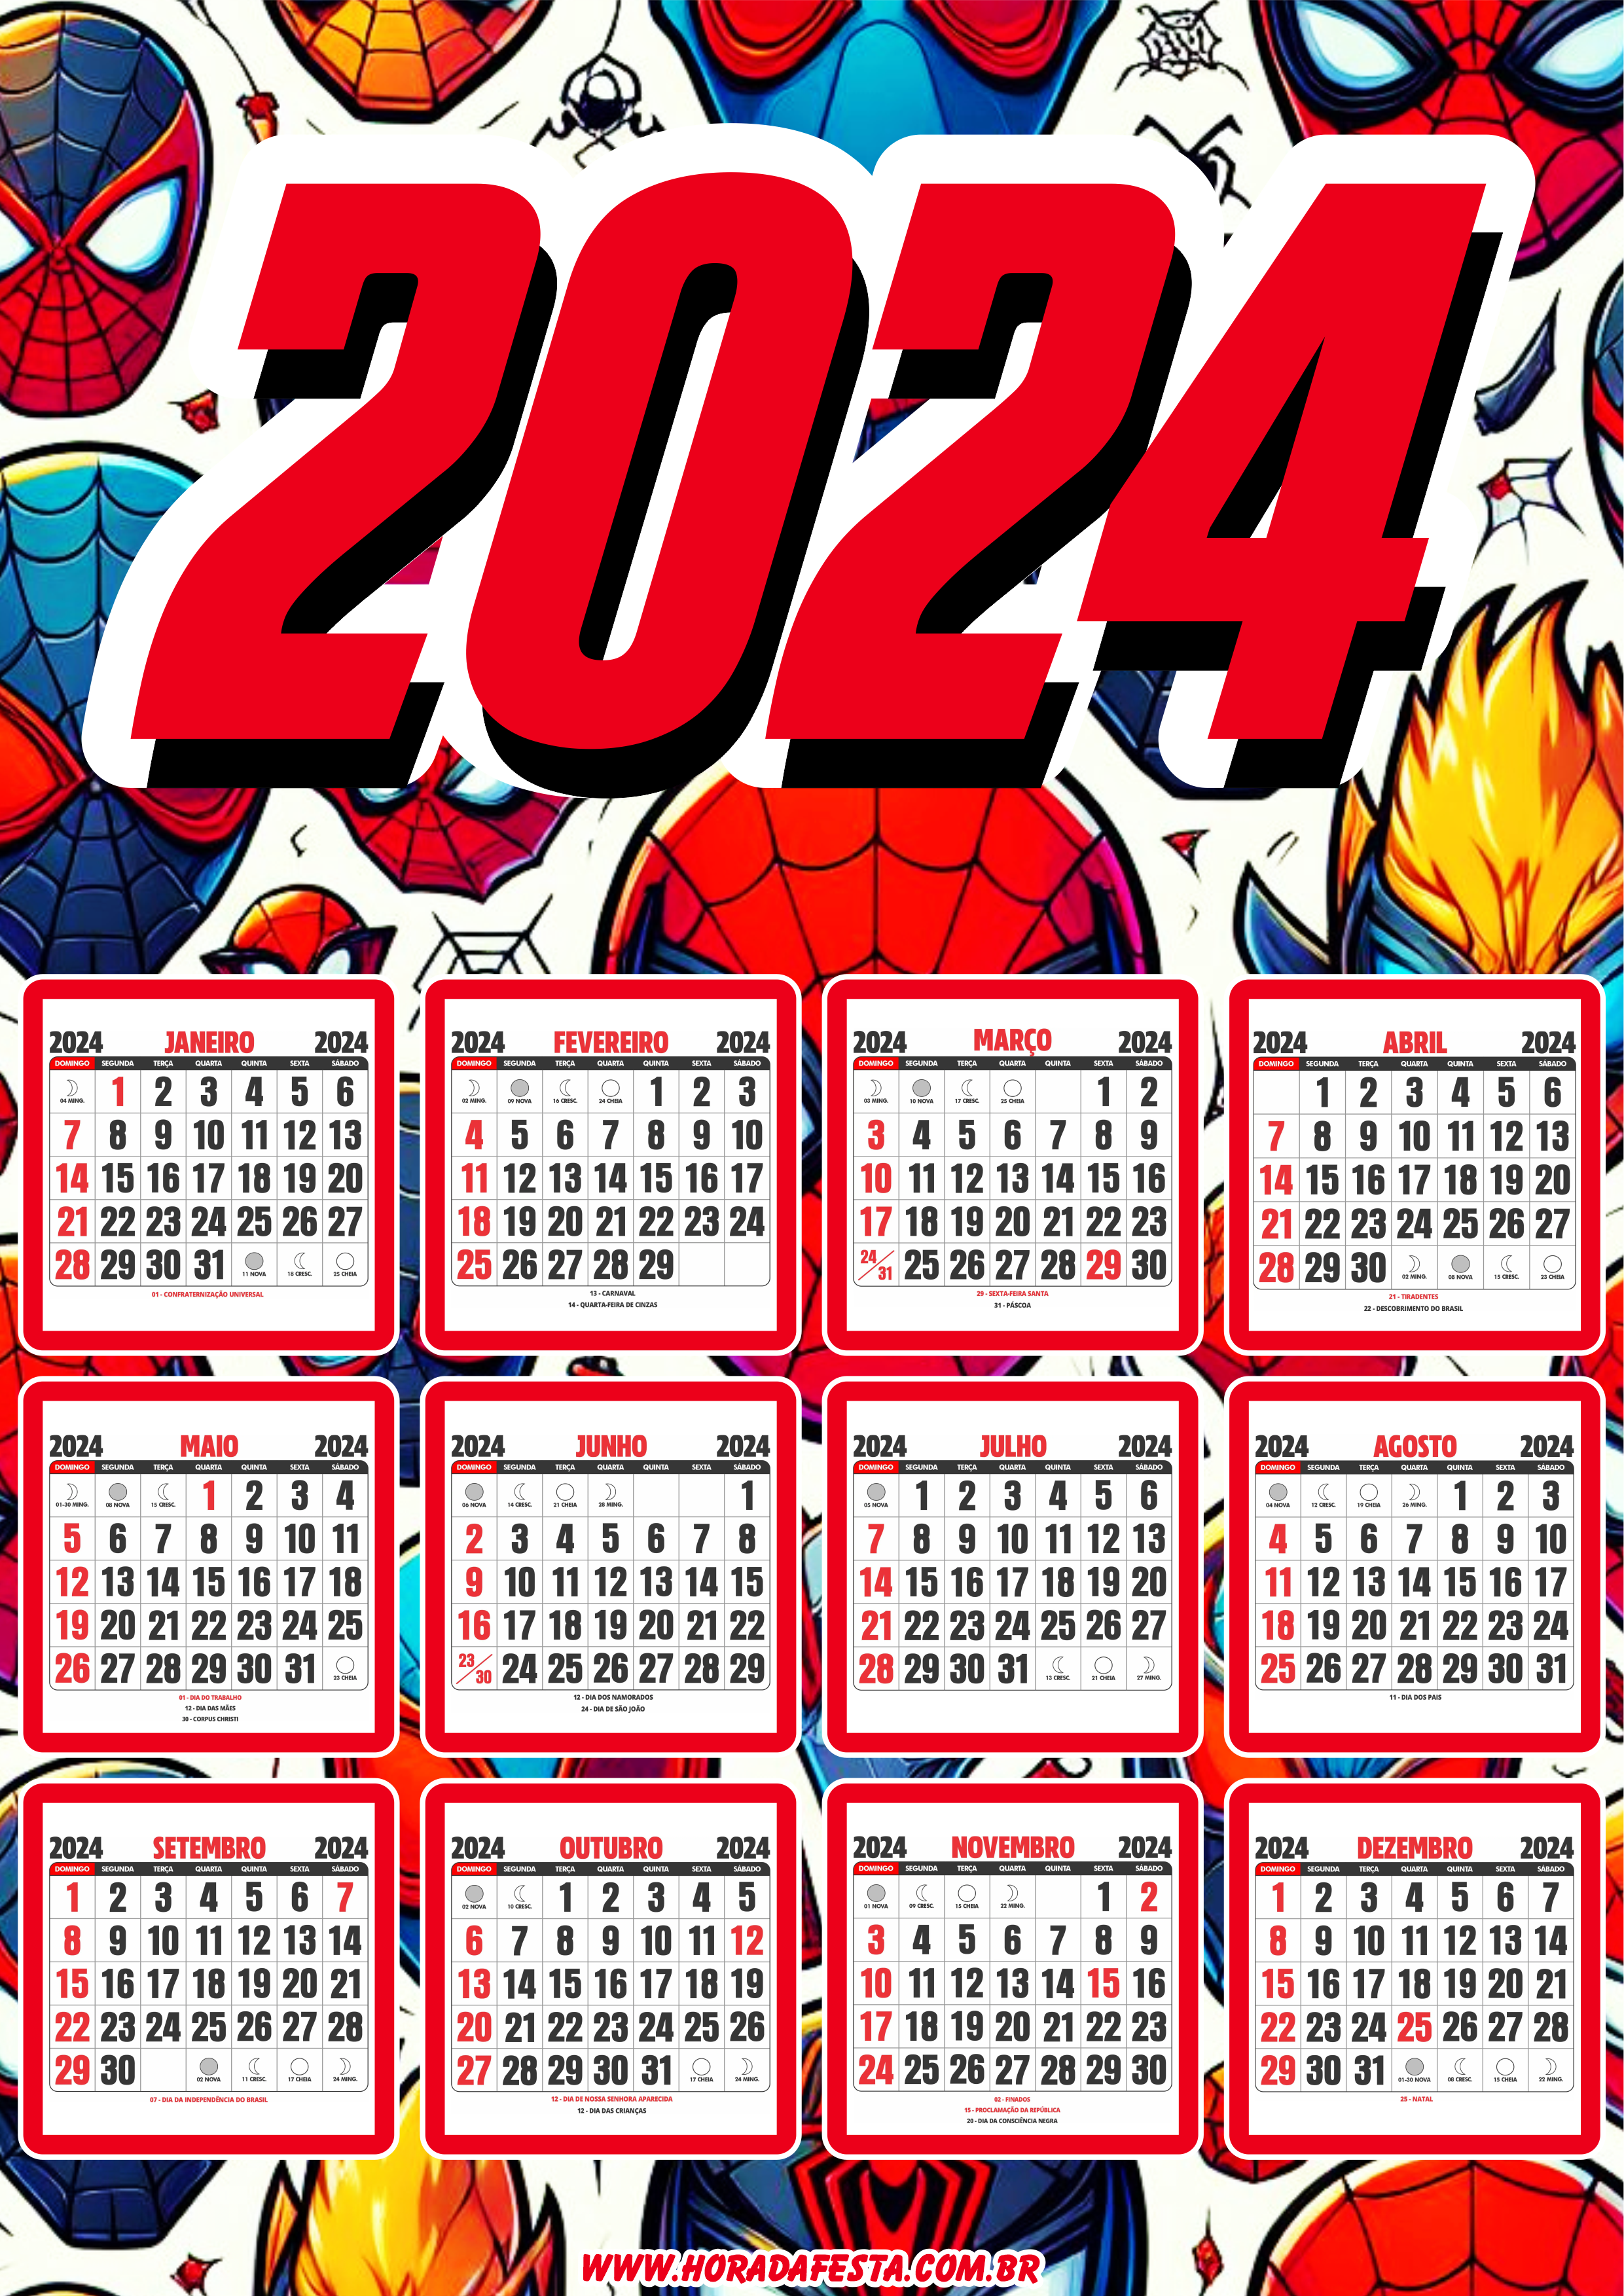 Calendário 2024 personalizado homem aranha spider man artigos de papelaria png